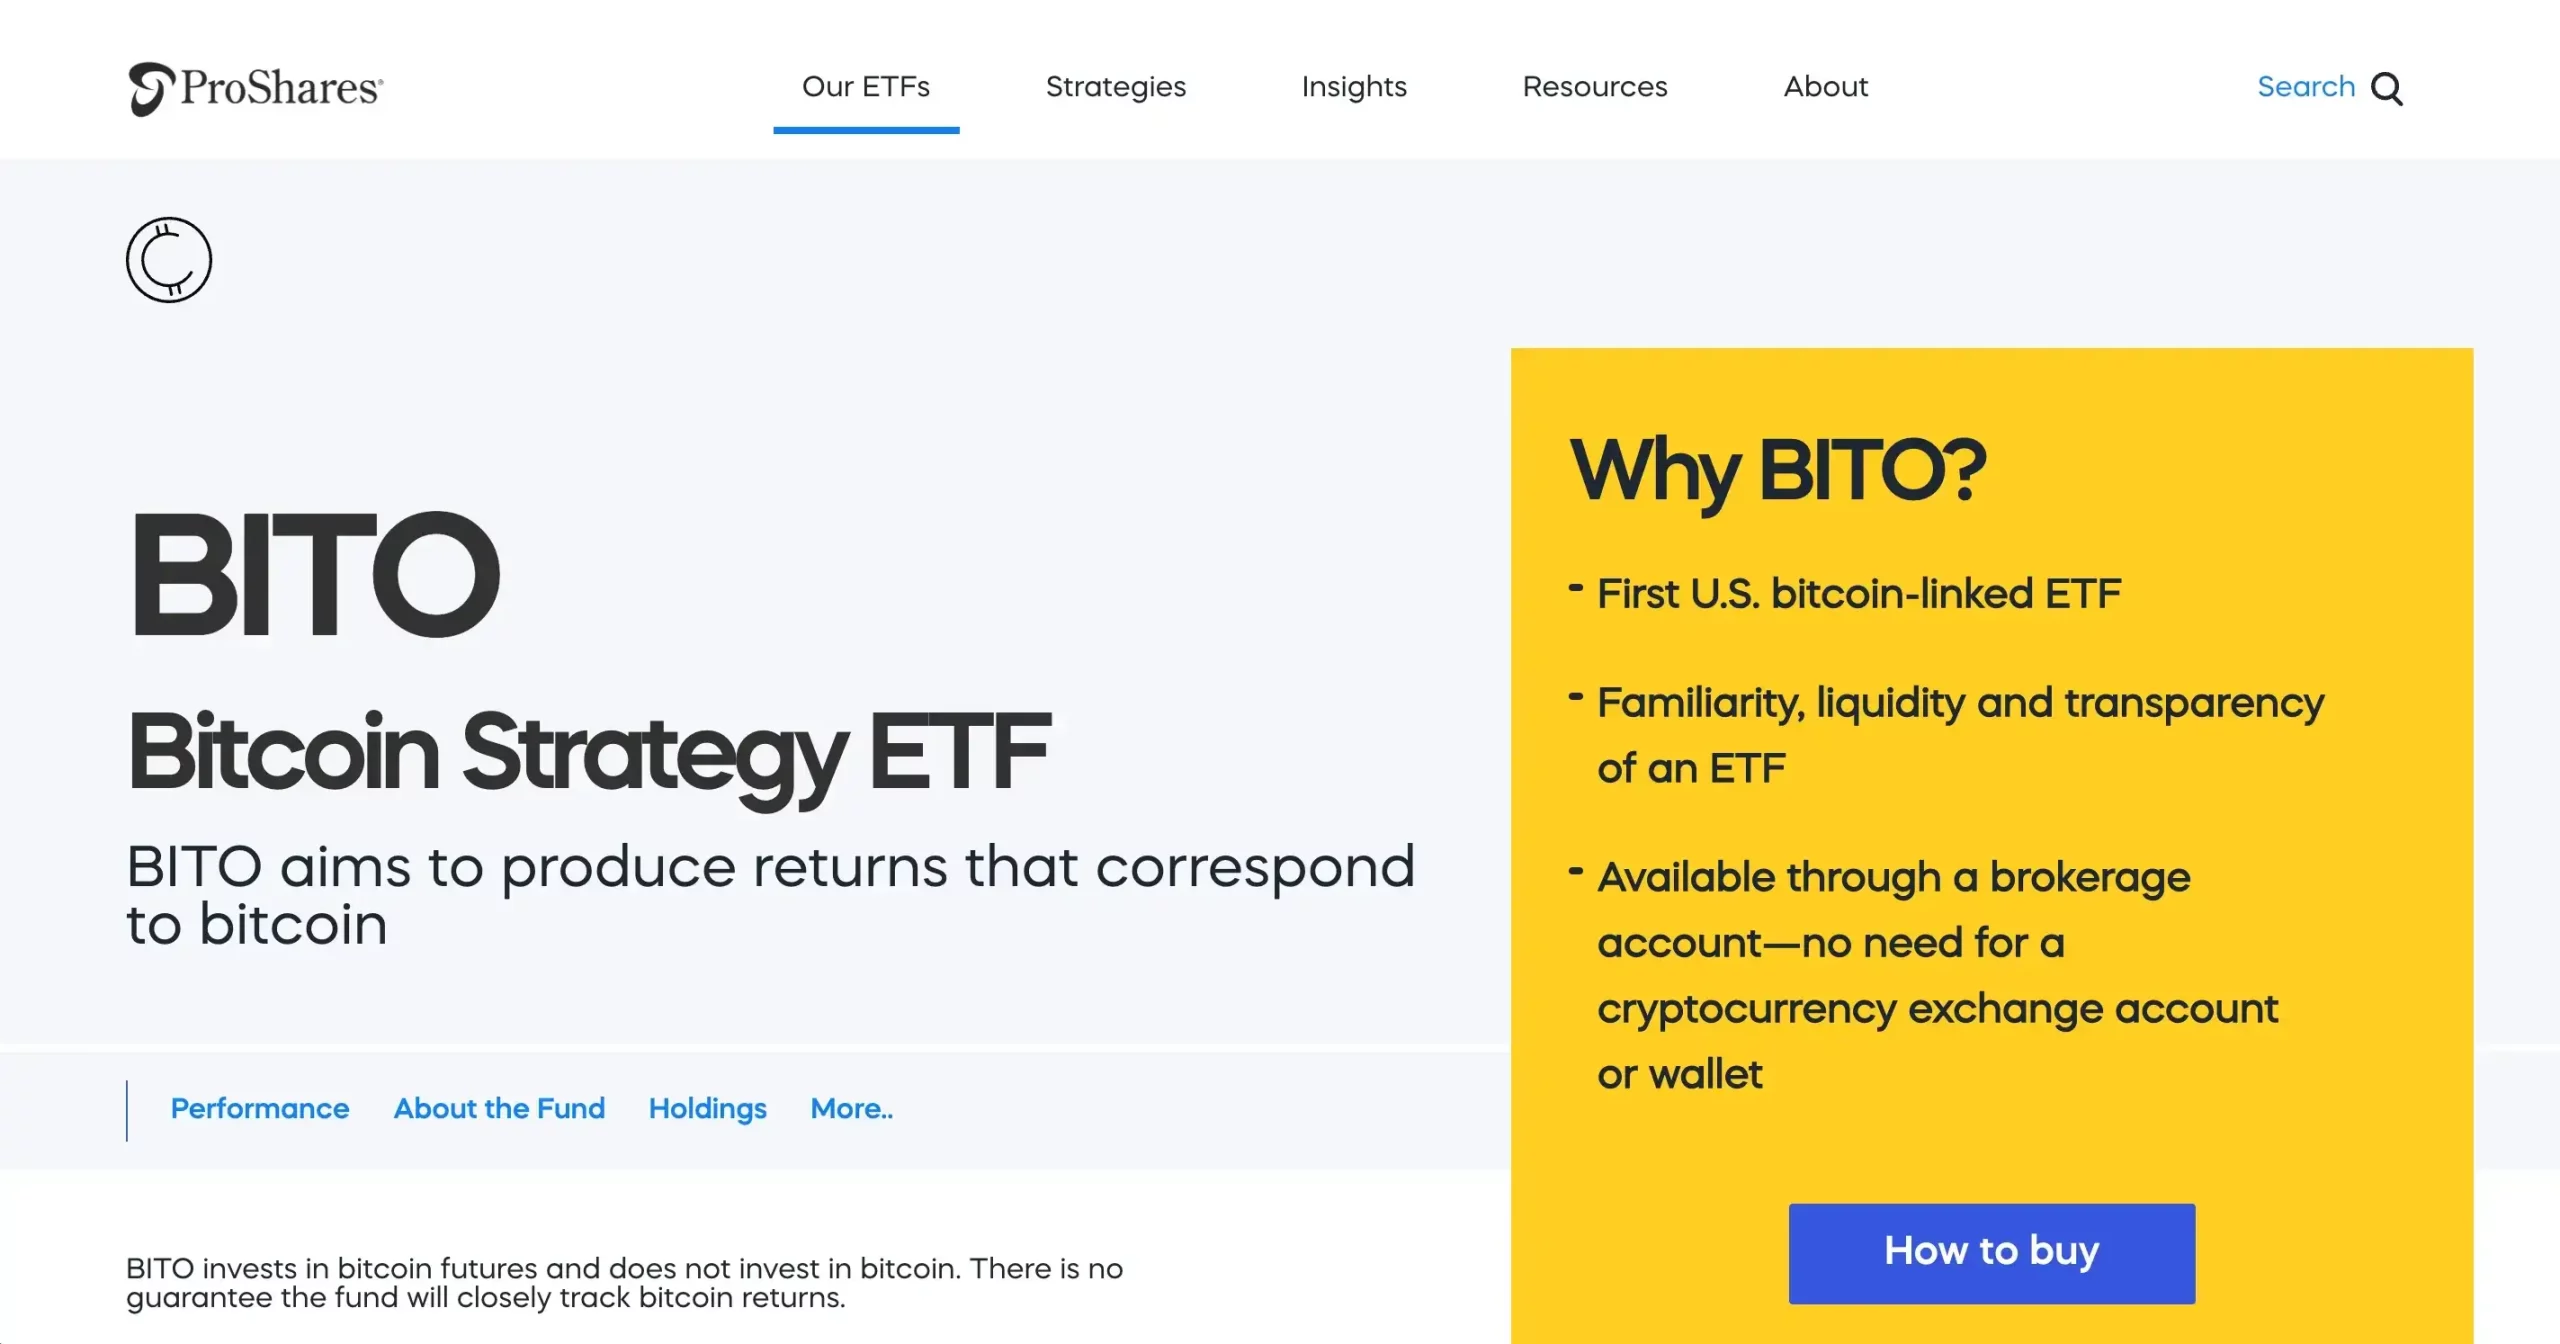 7. ProShares Bitcoin Strategy ETF (BITO)